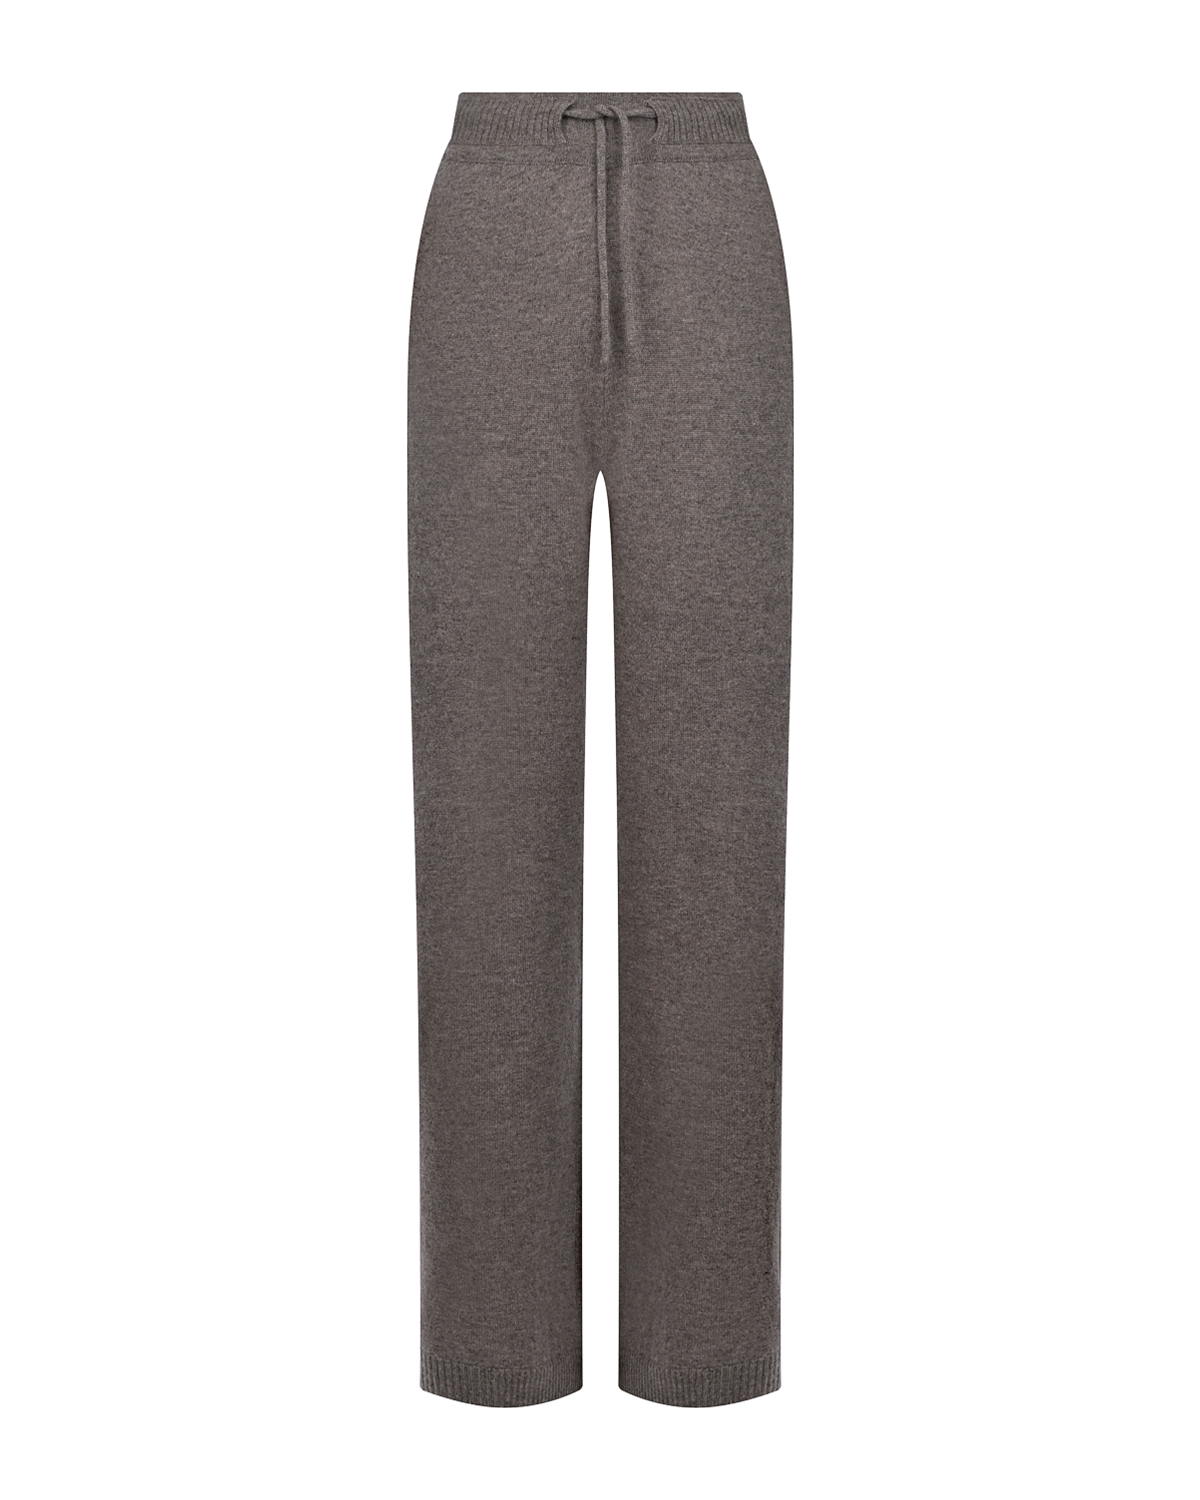 Прямые брюки кофейного цвета FTC Cashmere, размер 42 - фото 1